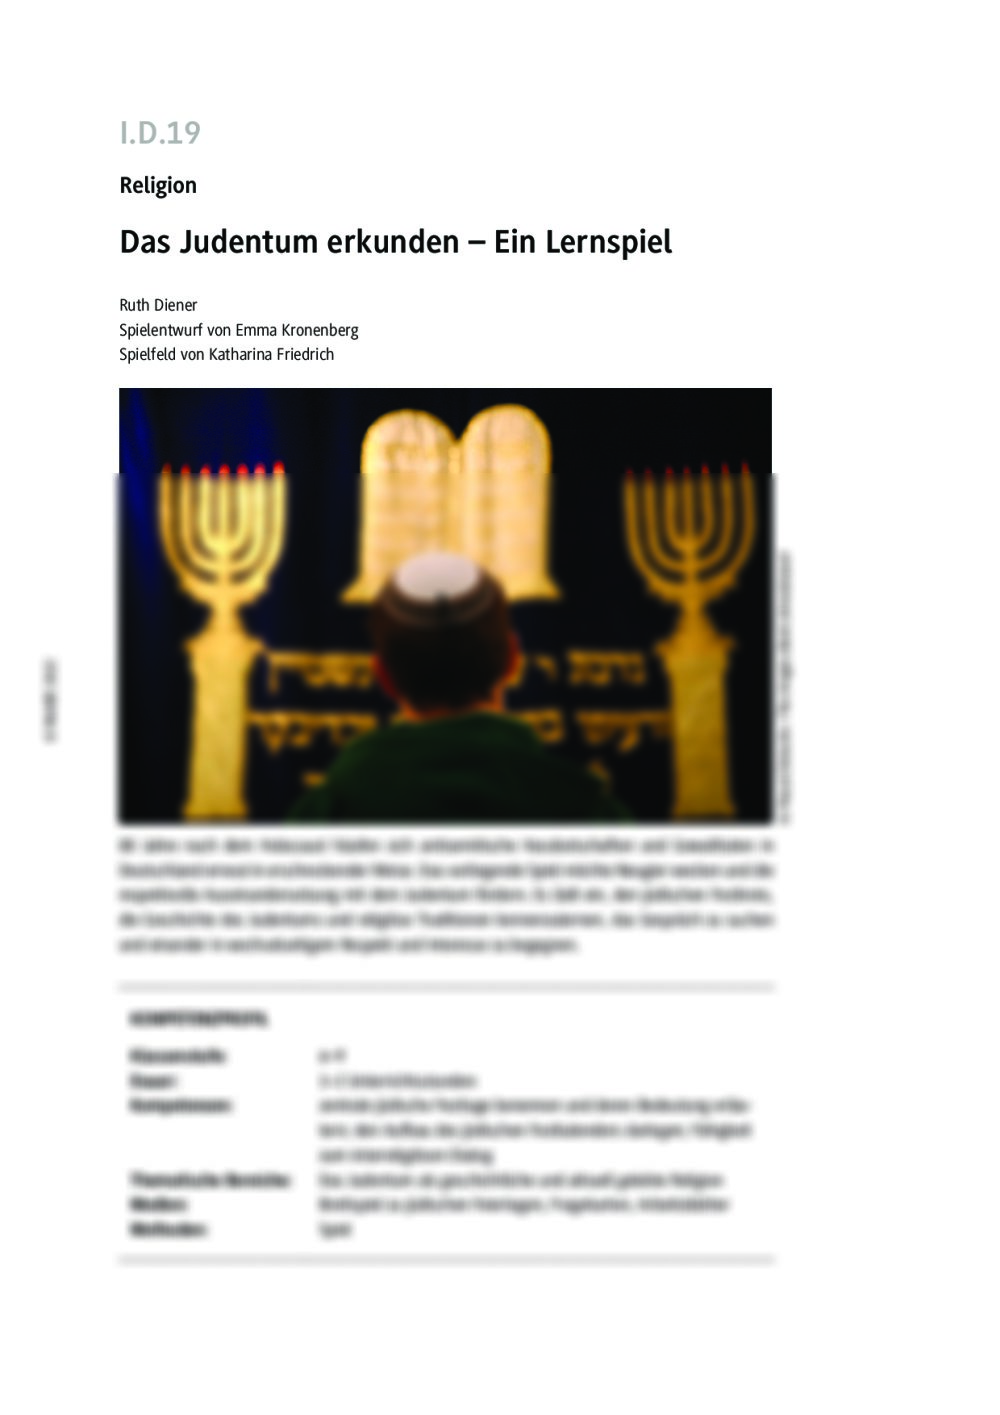 Das Judentum erkunden - Seite 1